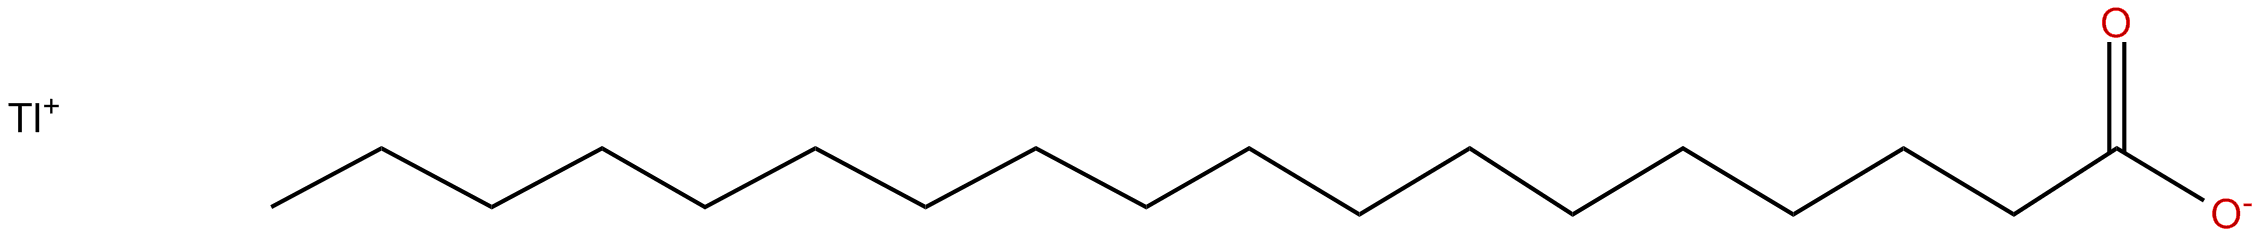 Image of thallium(I) octadecanoate